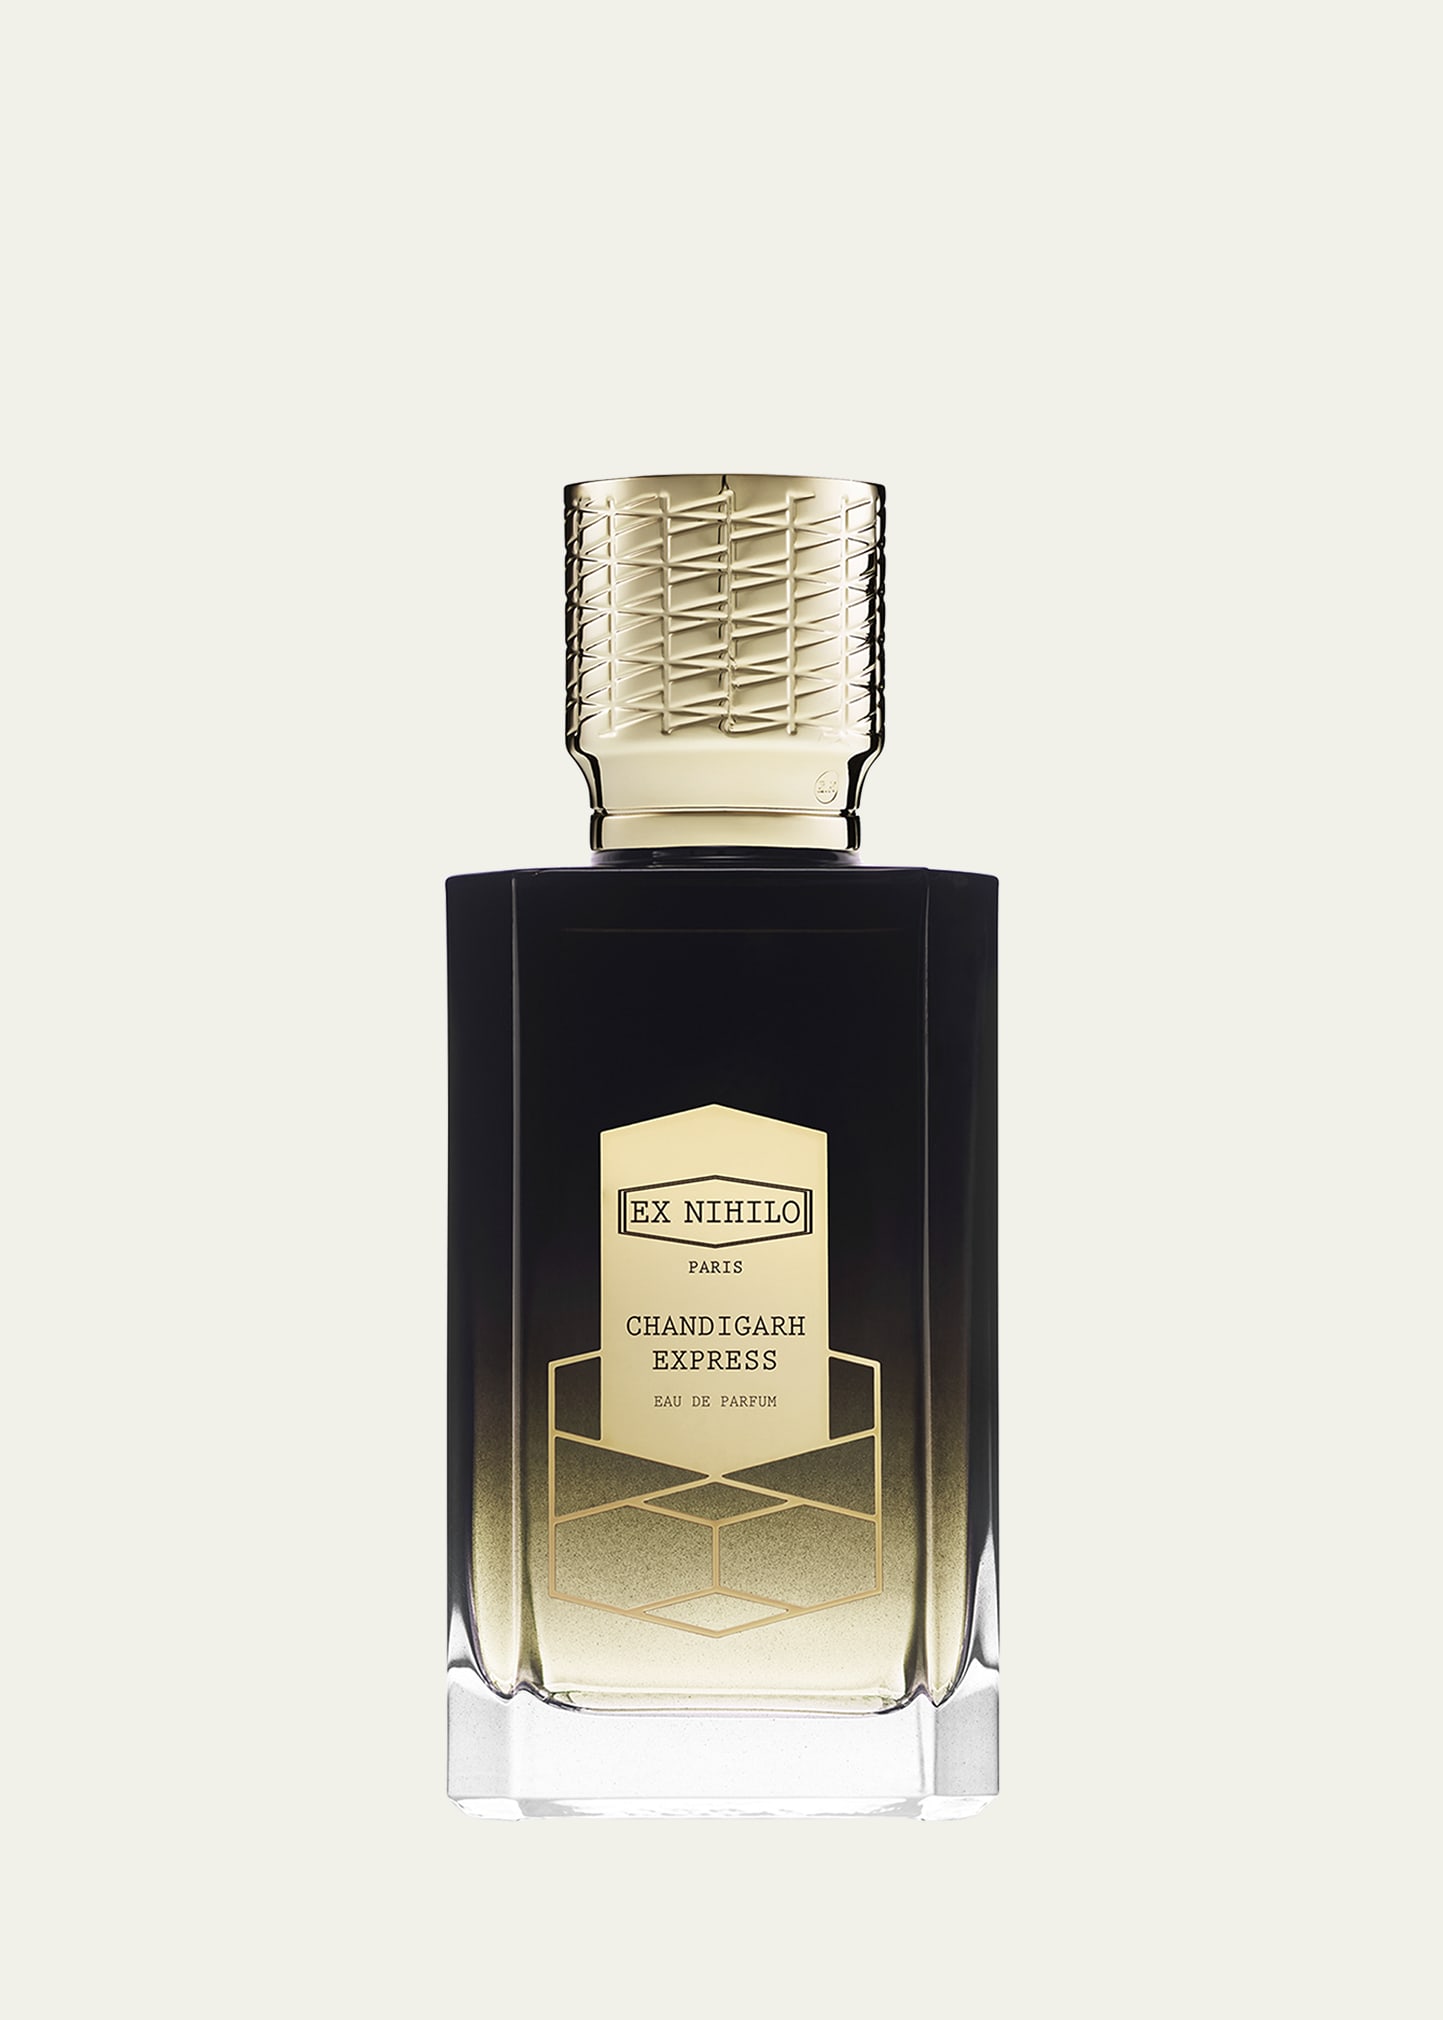 Chandigarh Express Eau de Parfum, 3.4 oz.